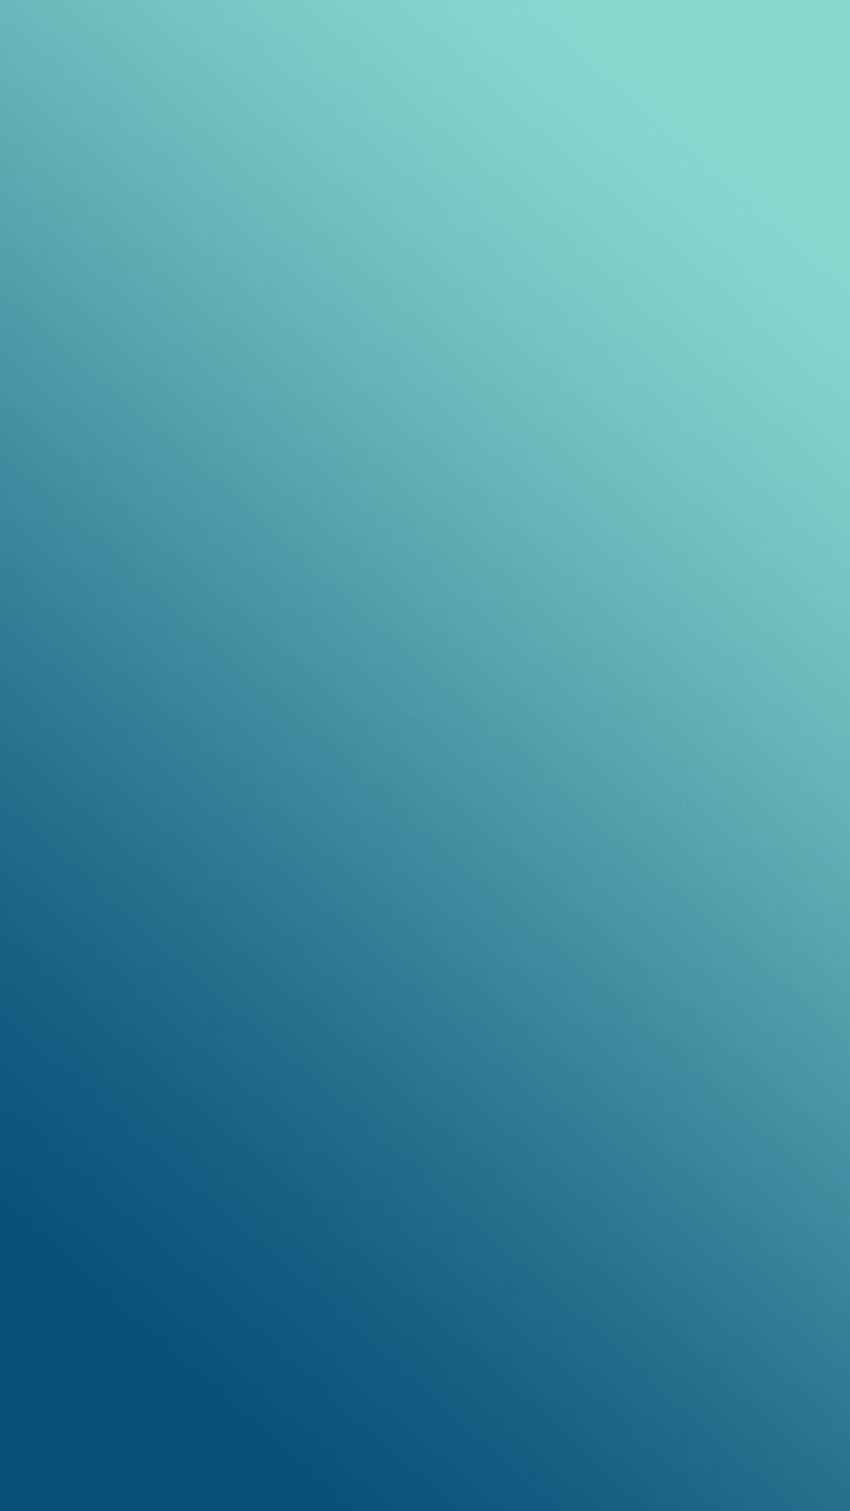 Biru Teal, Warna Turquoise wallpaper ponsel HD